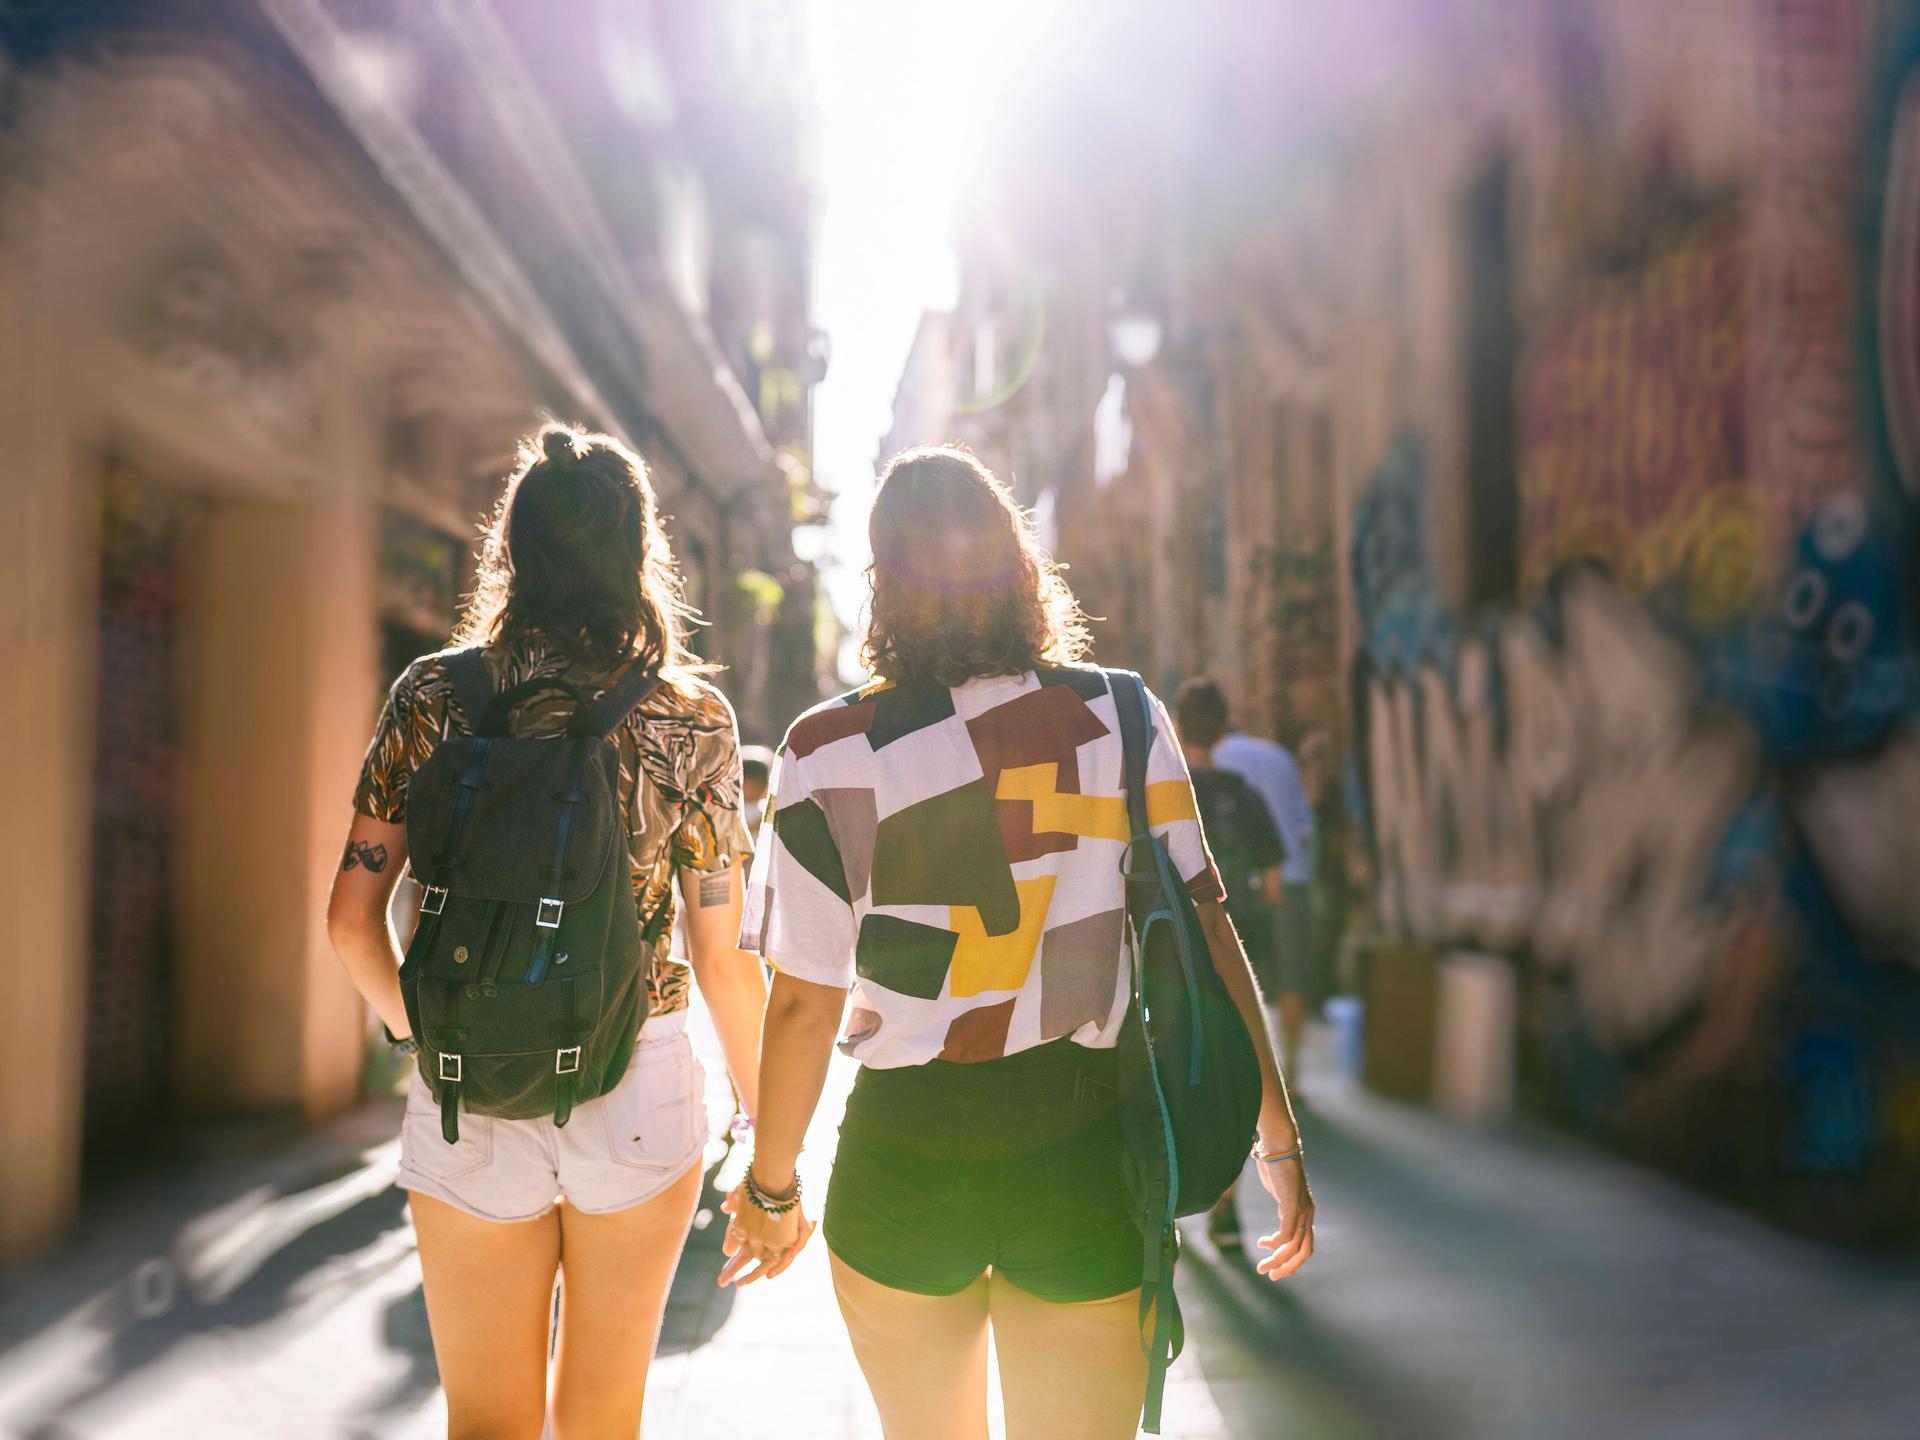 Zwei Frauen laufen Hand in Hand durch eine Gasse in einer sommerlichen Altstadt.